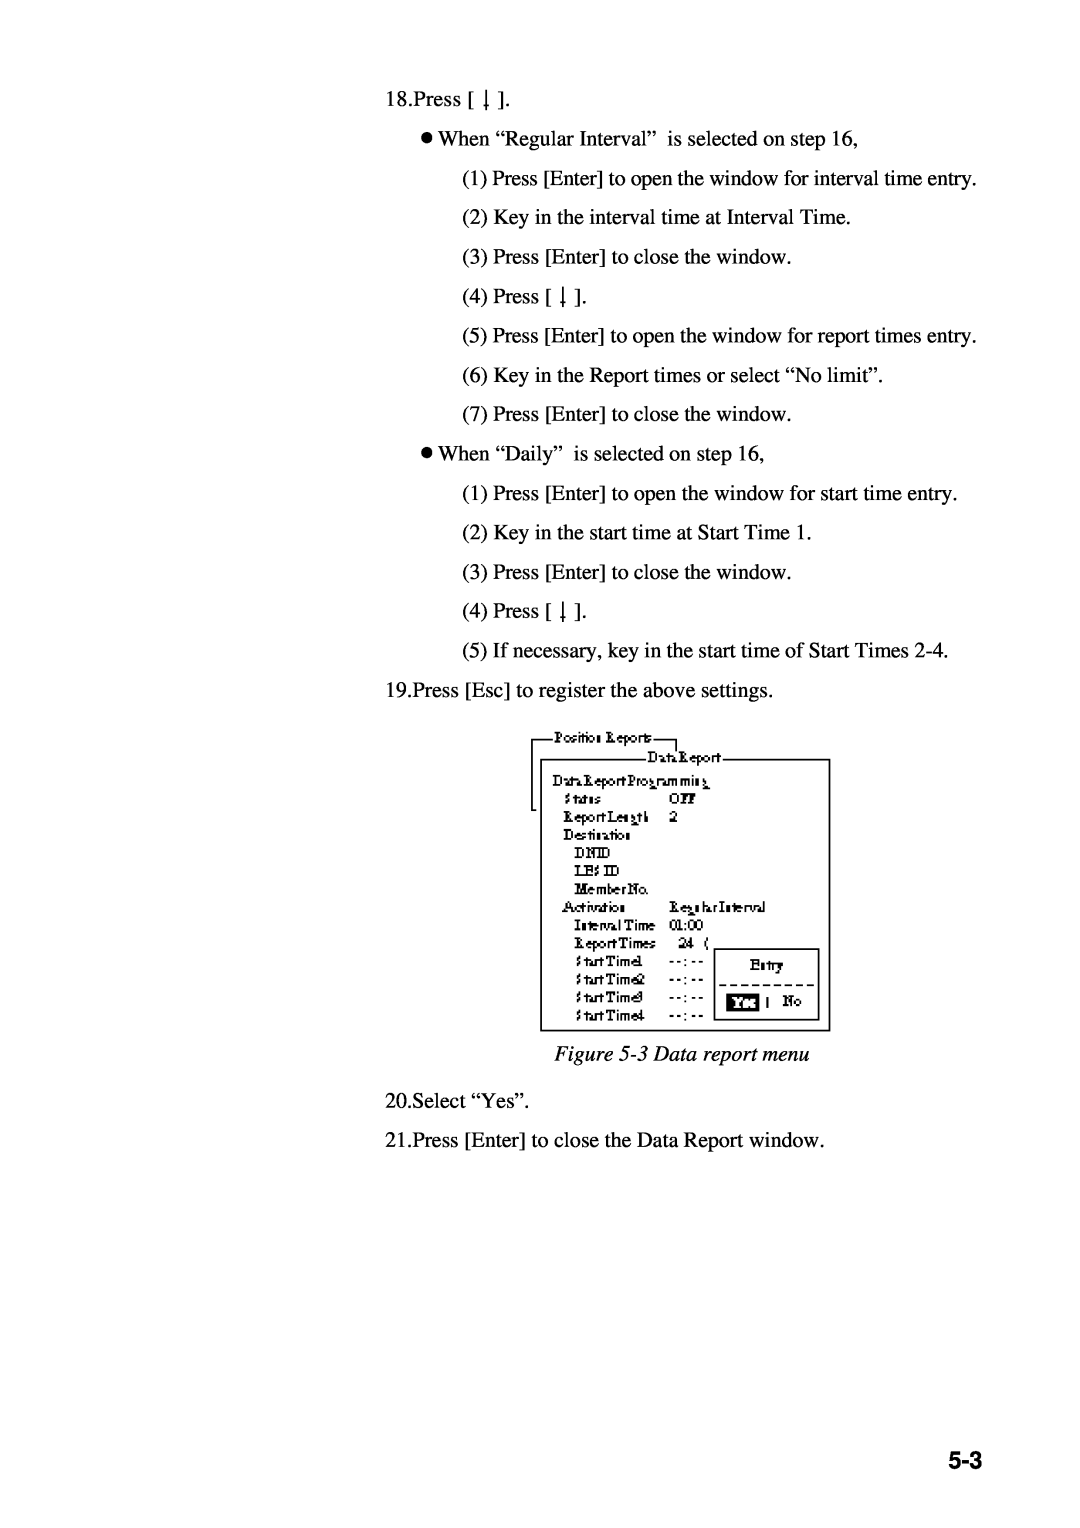 Furuno RC-1500-1T manual 3 Data report menu 